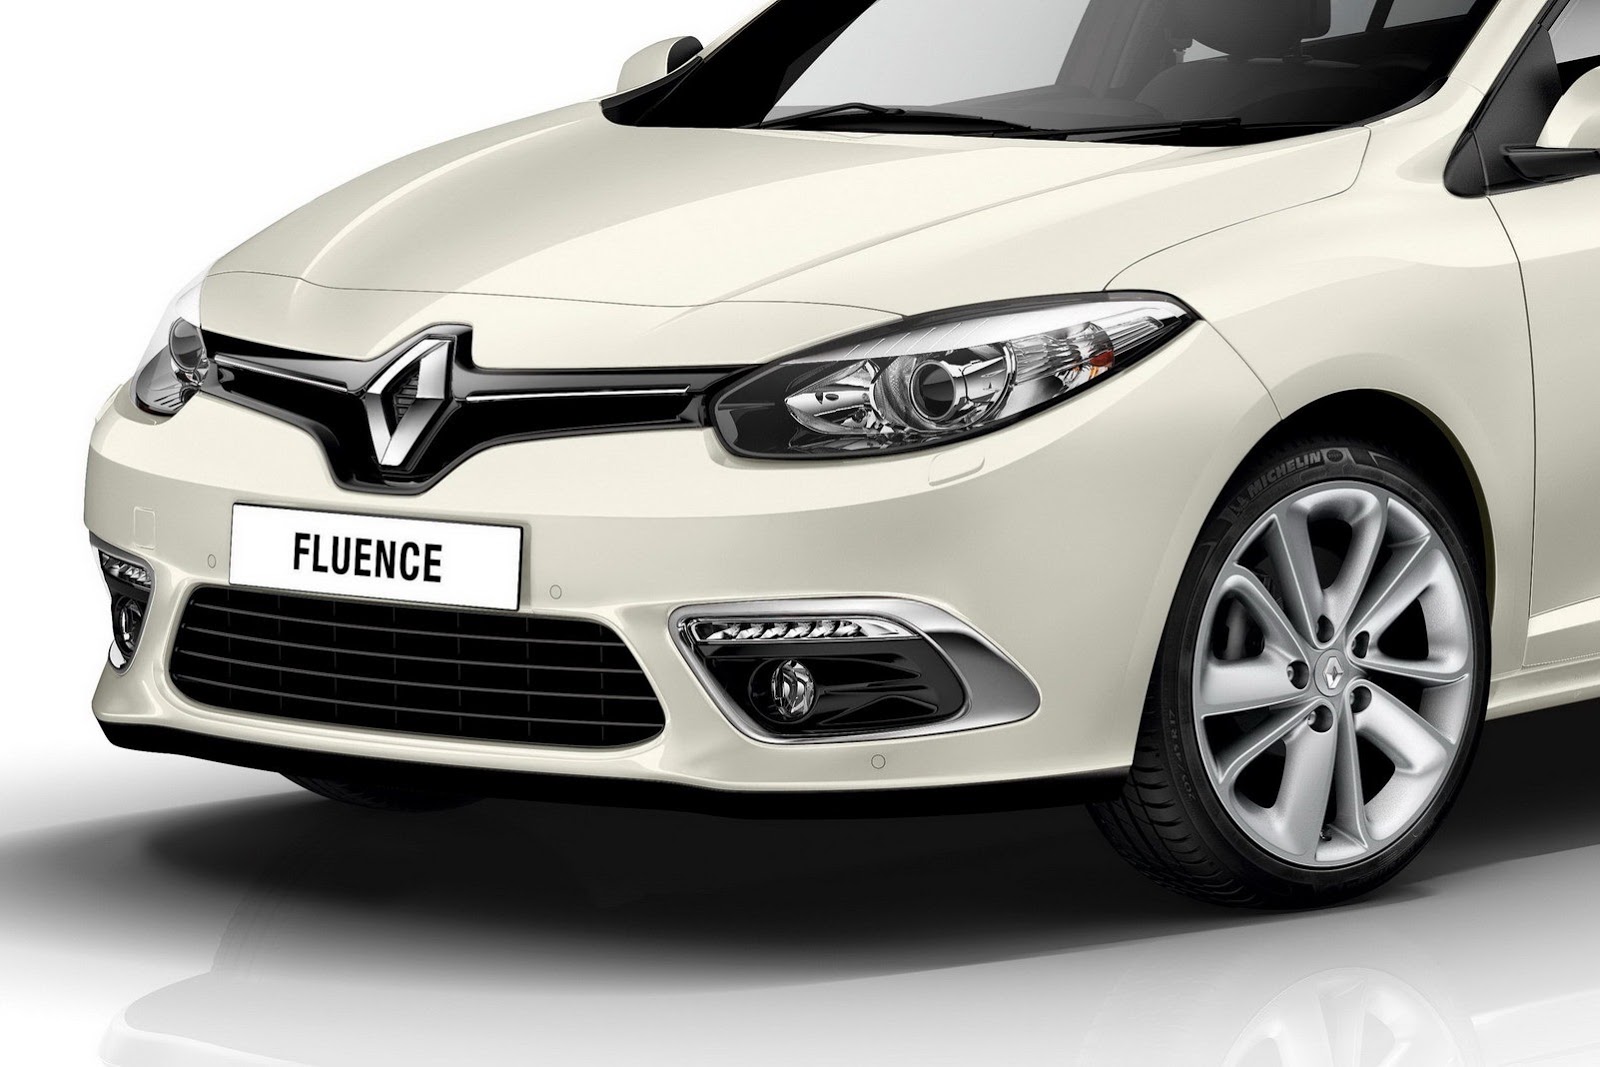 2013-Renault-Fluence-11.jpg